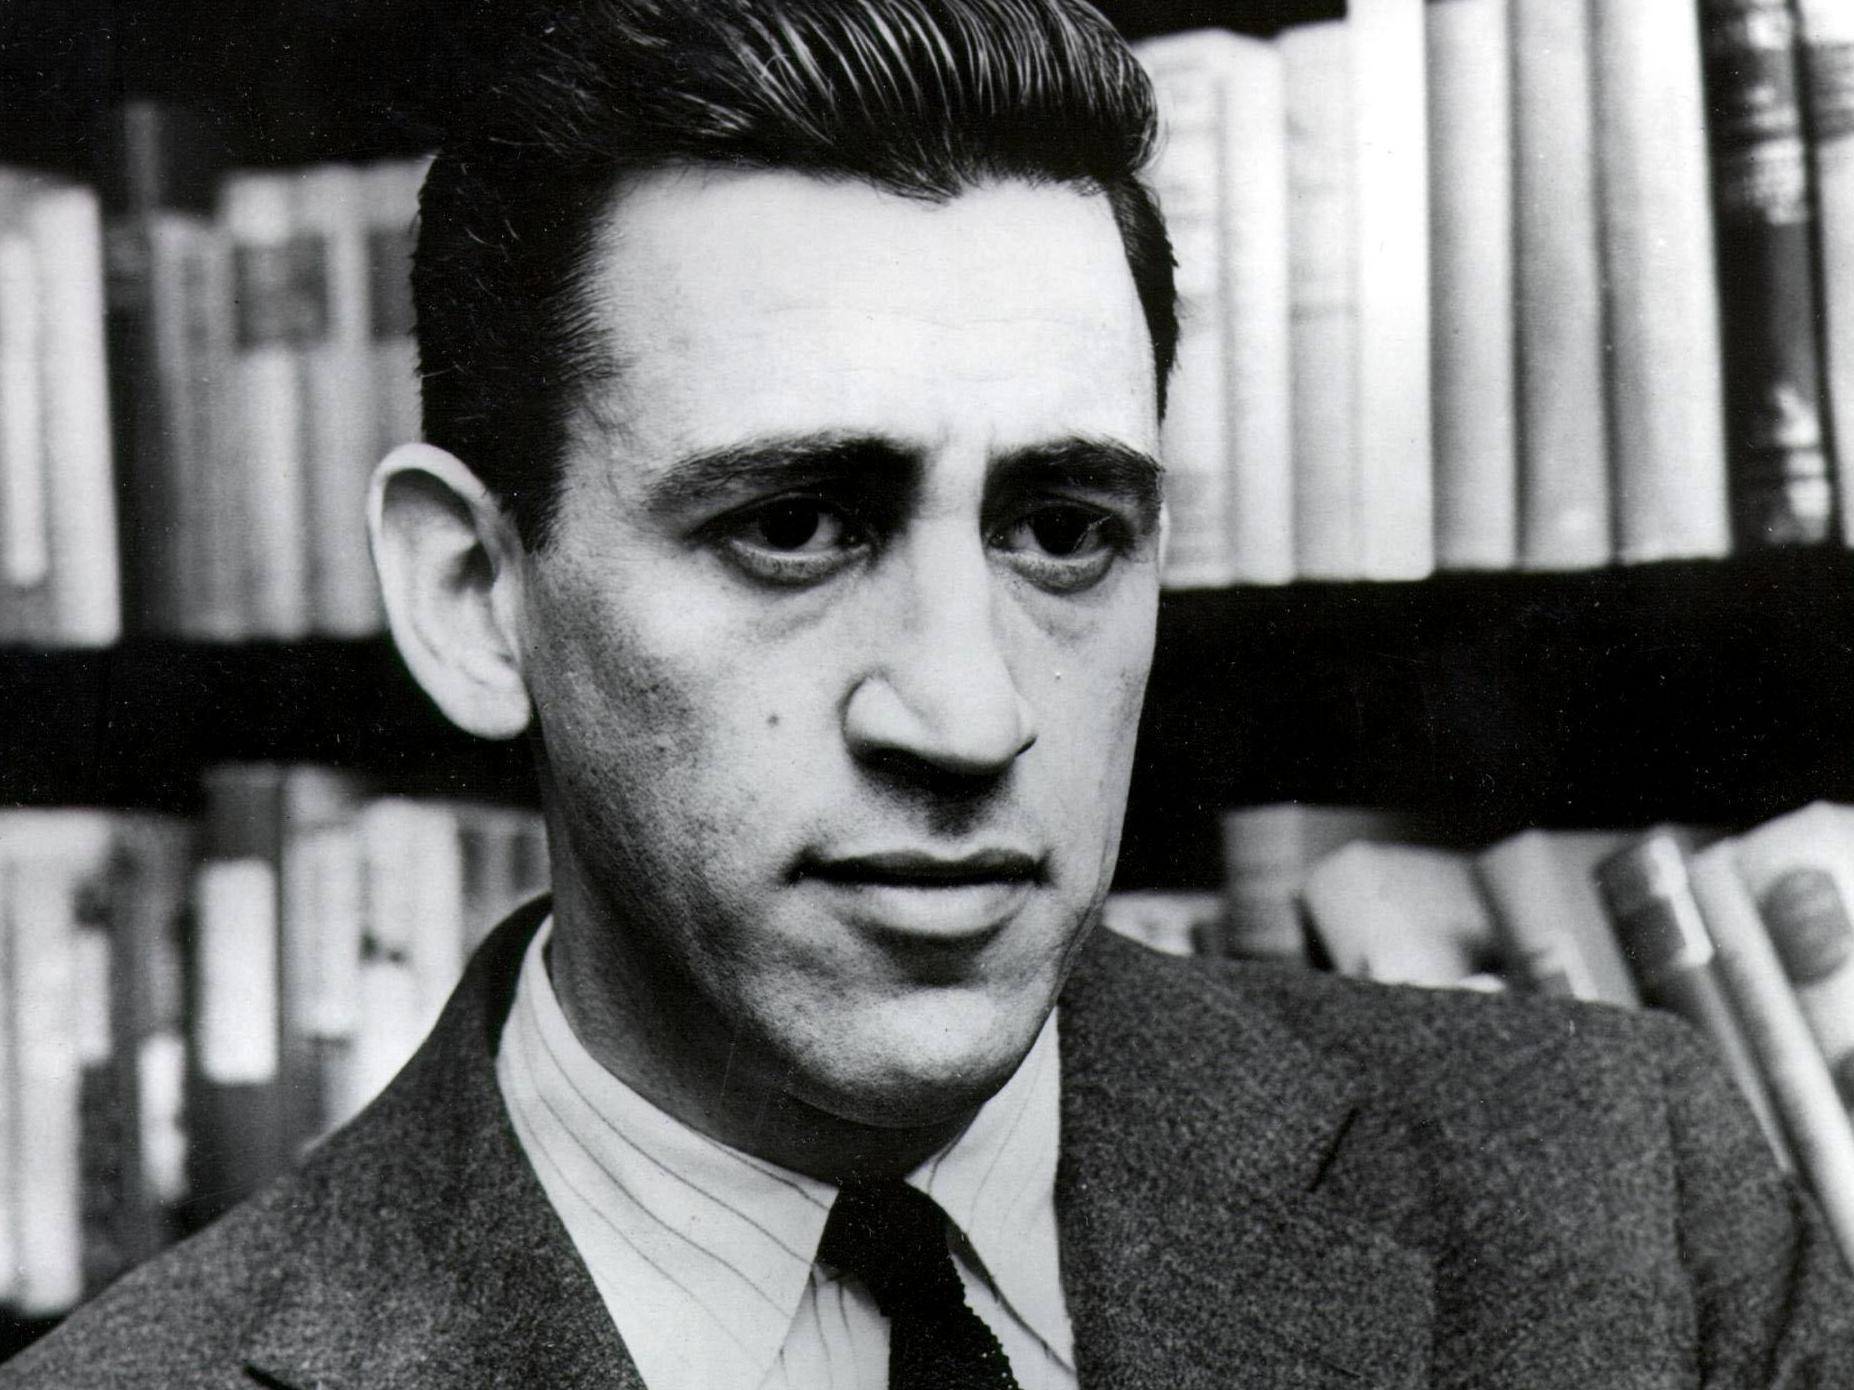 A imagem é uma fotografia em preto e branco do autor J.D. Salinger. Salinger era um homem branco de cabelos curtos lisos, formando um pequeno topete. Ele está vestindo um terno com uma camisa e gravata. Atrás dele, é possível ver uma estante de livros.